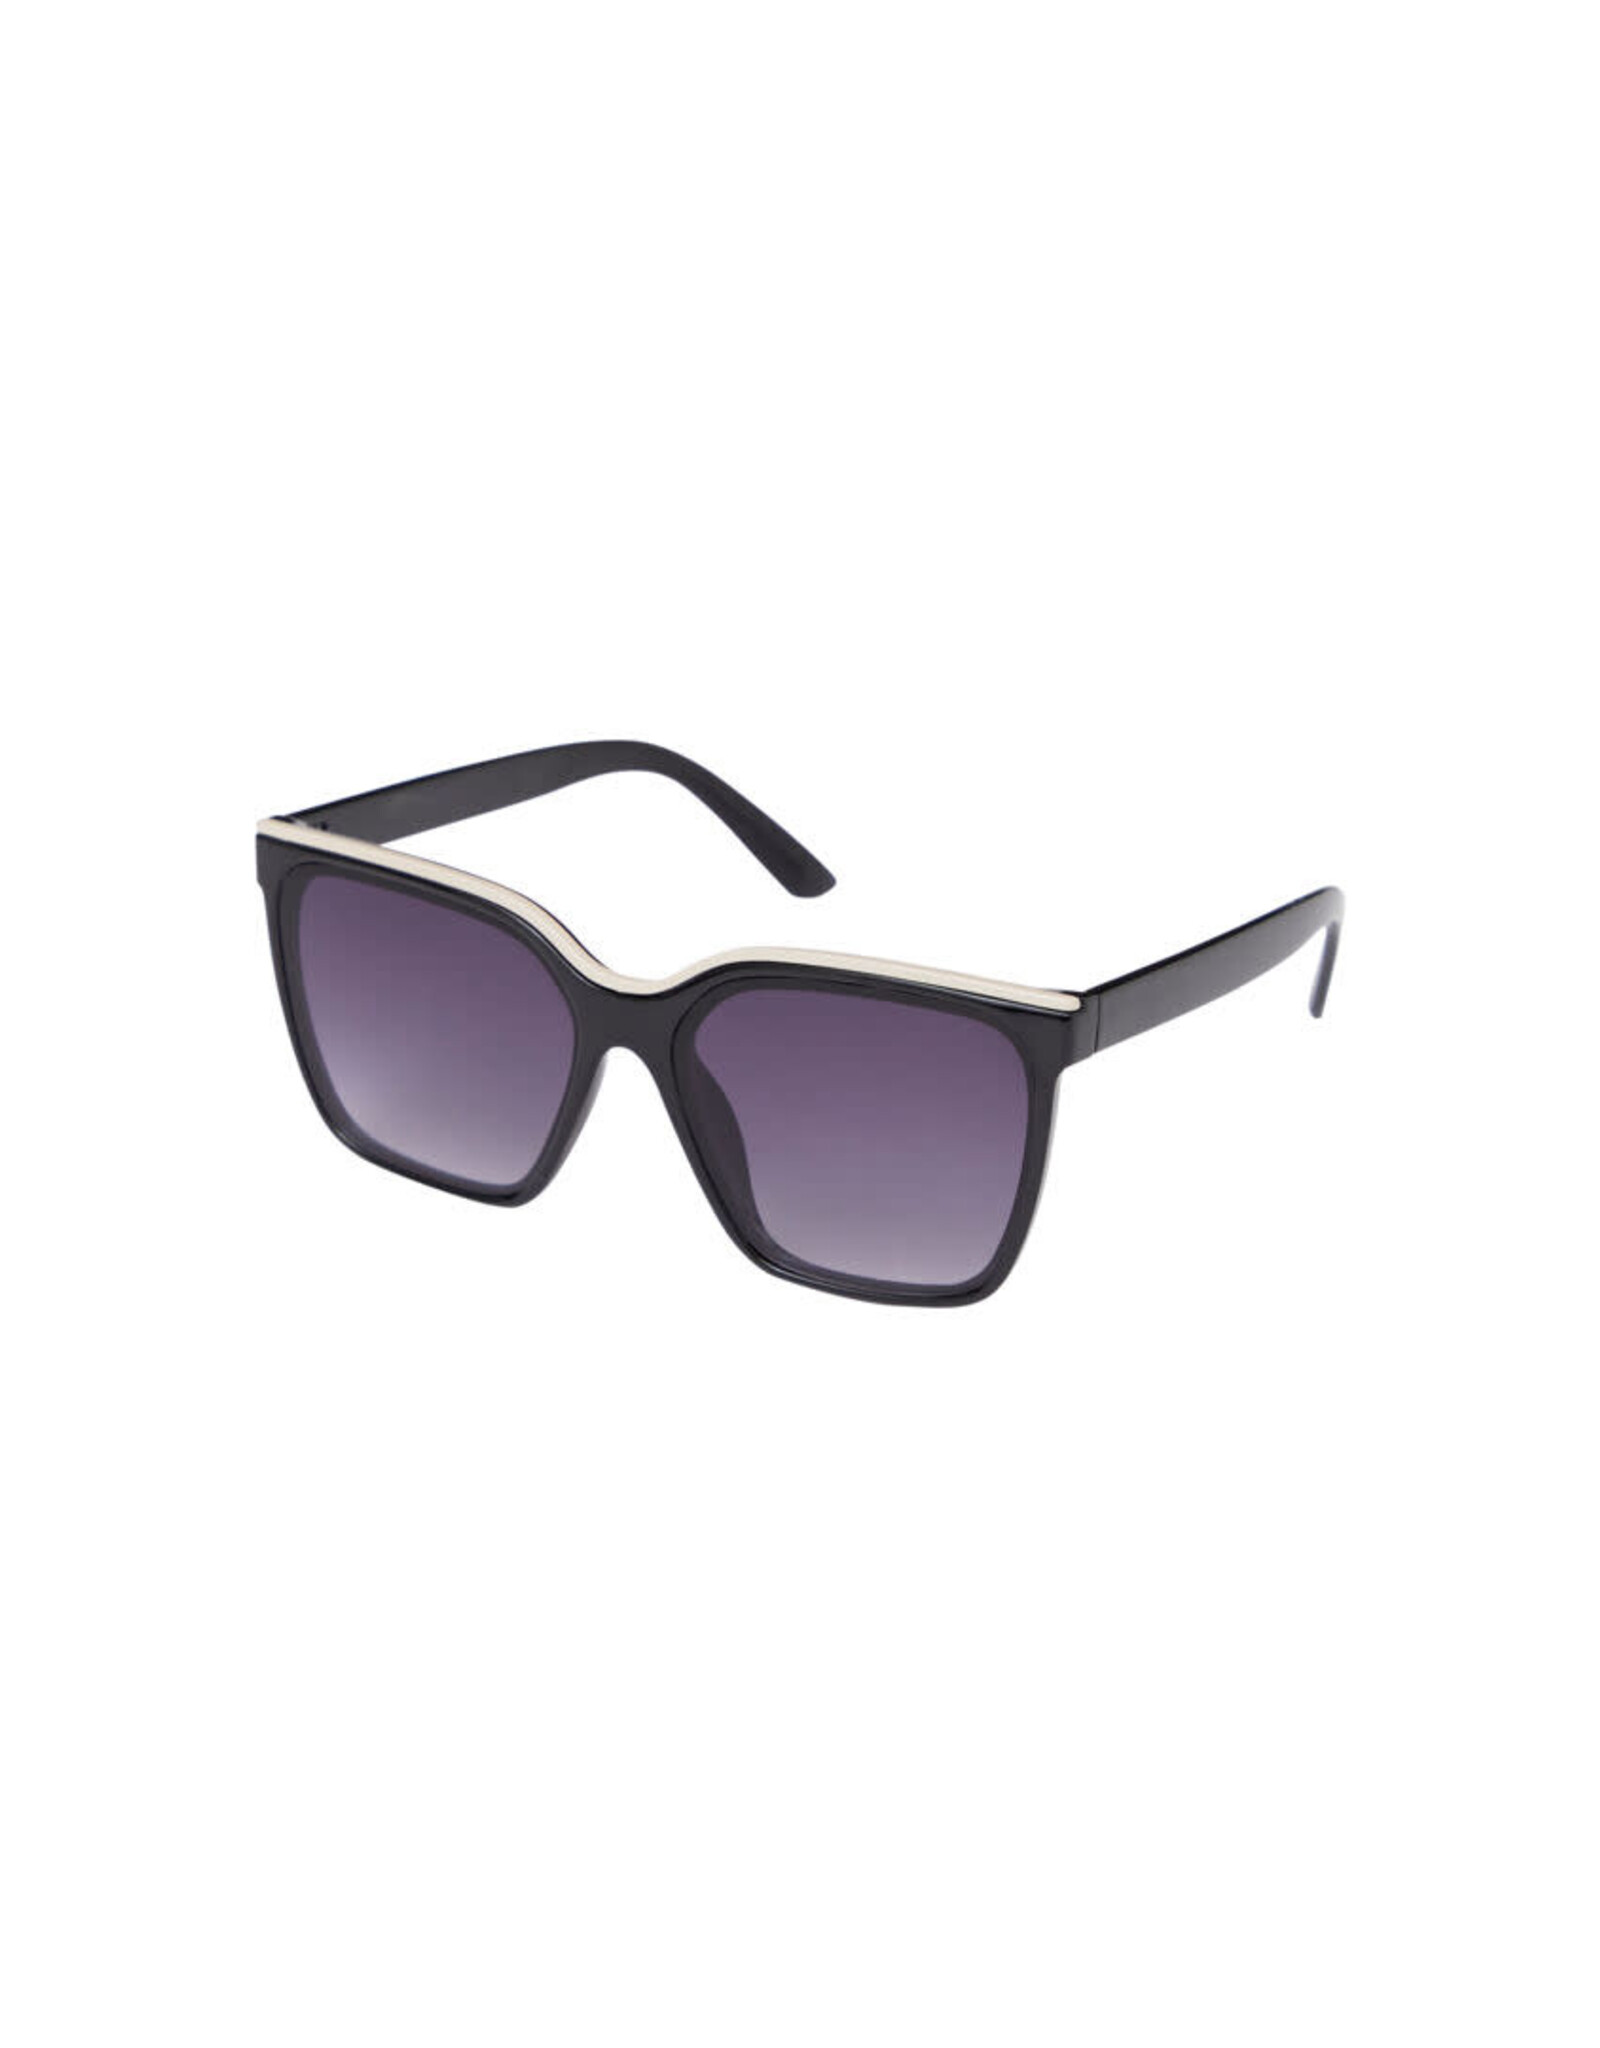 ICHI ICHI - Hia sunglasses (Meteorite with cream)